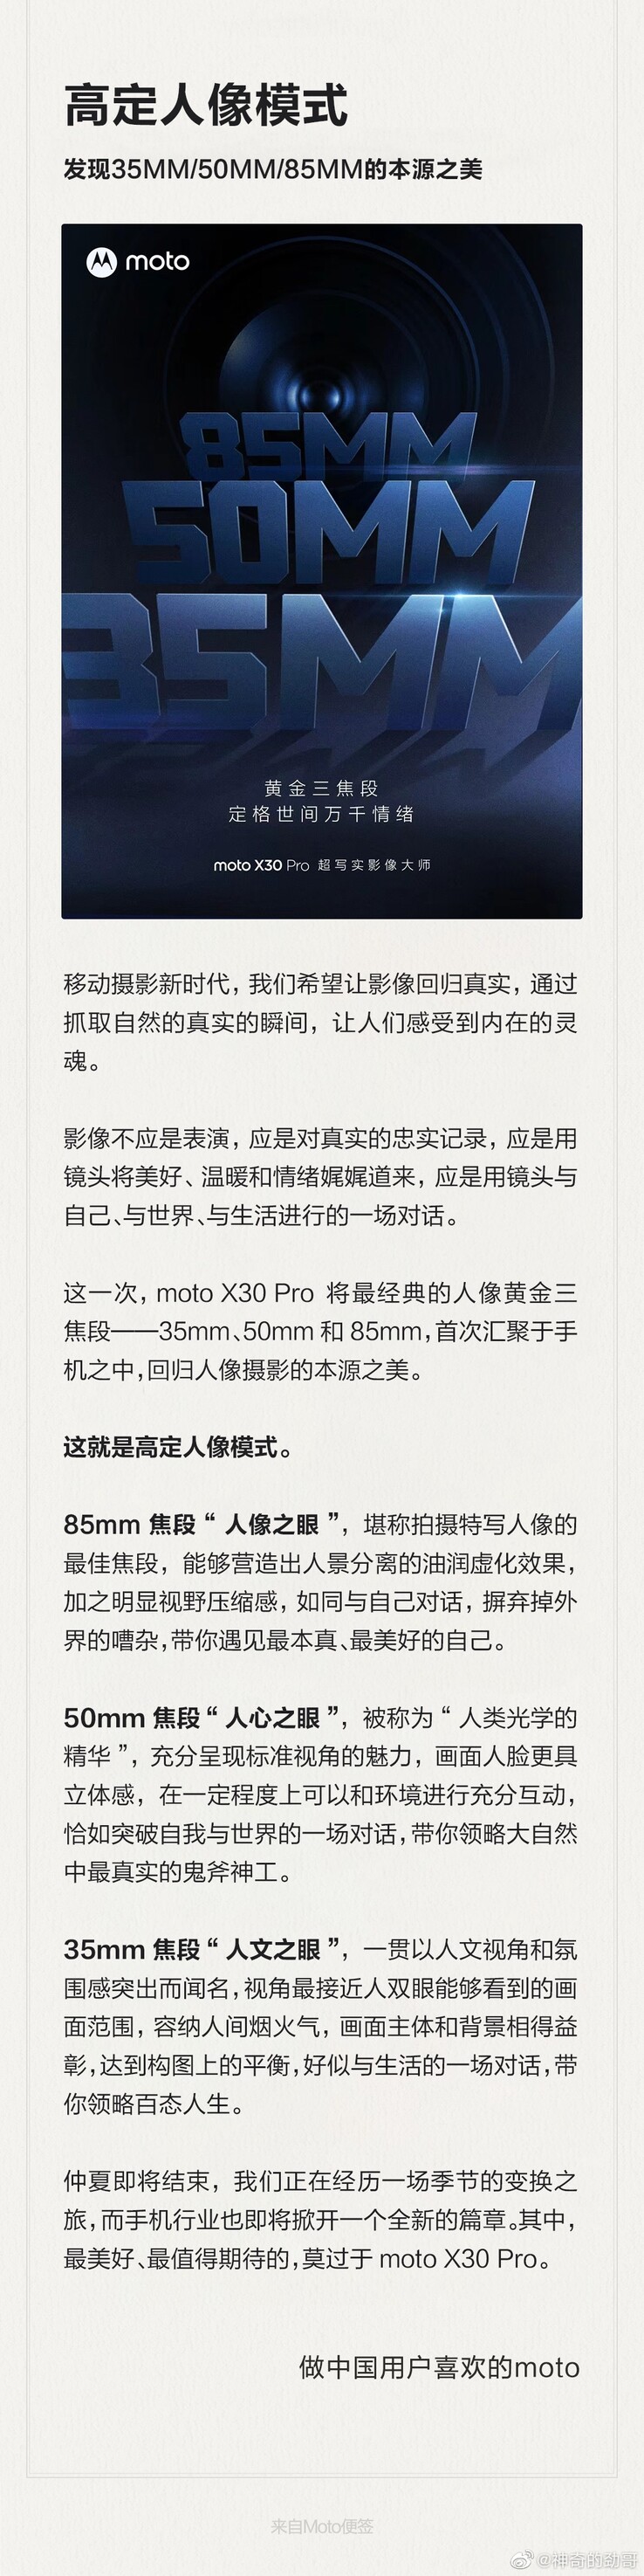 Teaser completo del Moto X30 Pro de Motorola con distancia focal. (Fuente: Motorola vía Weibo)